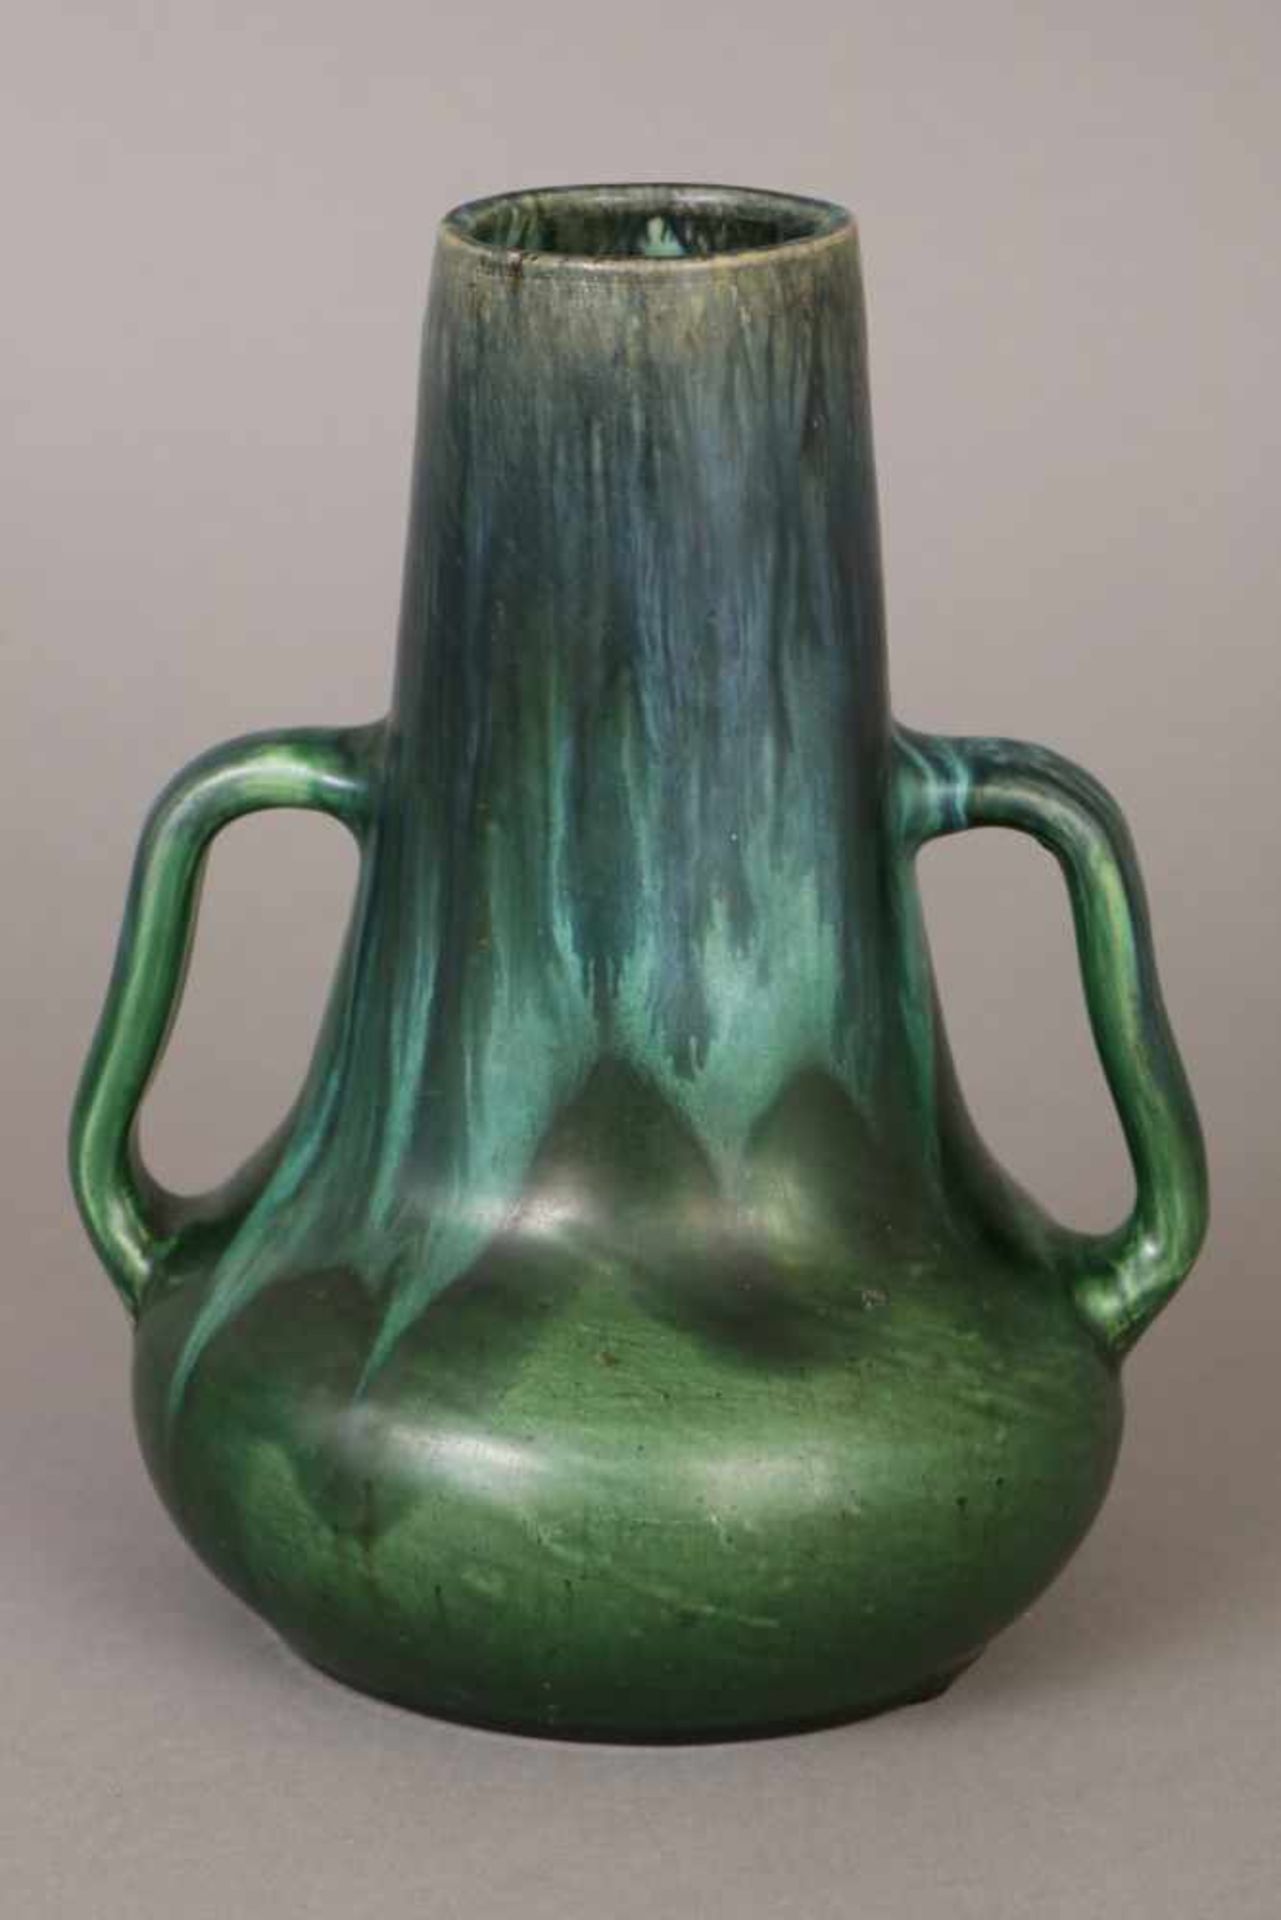 MUTZ WITWE ALTONA Jugendstil-Vase1920er Jahre, Modell-Nr. 1524, heller Scherben, bauchiger Korpus